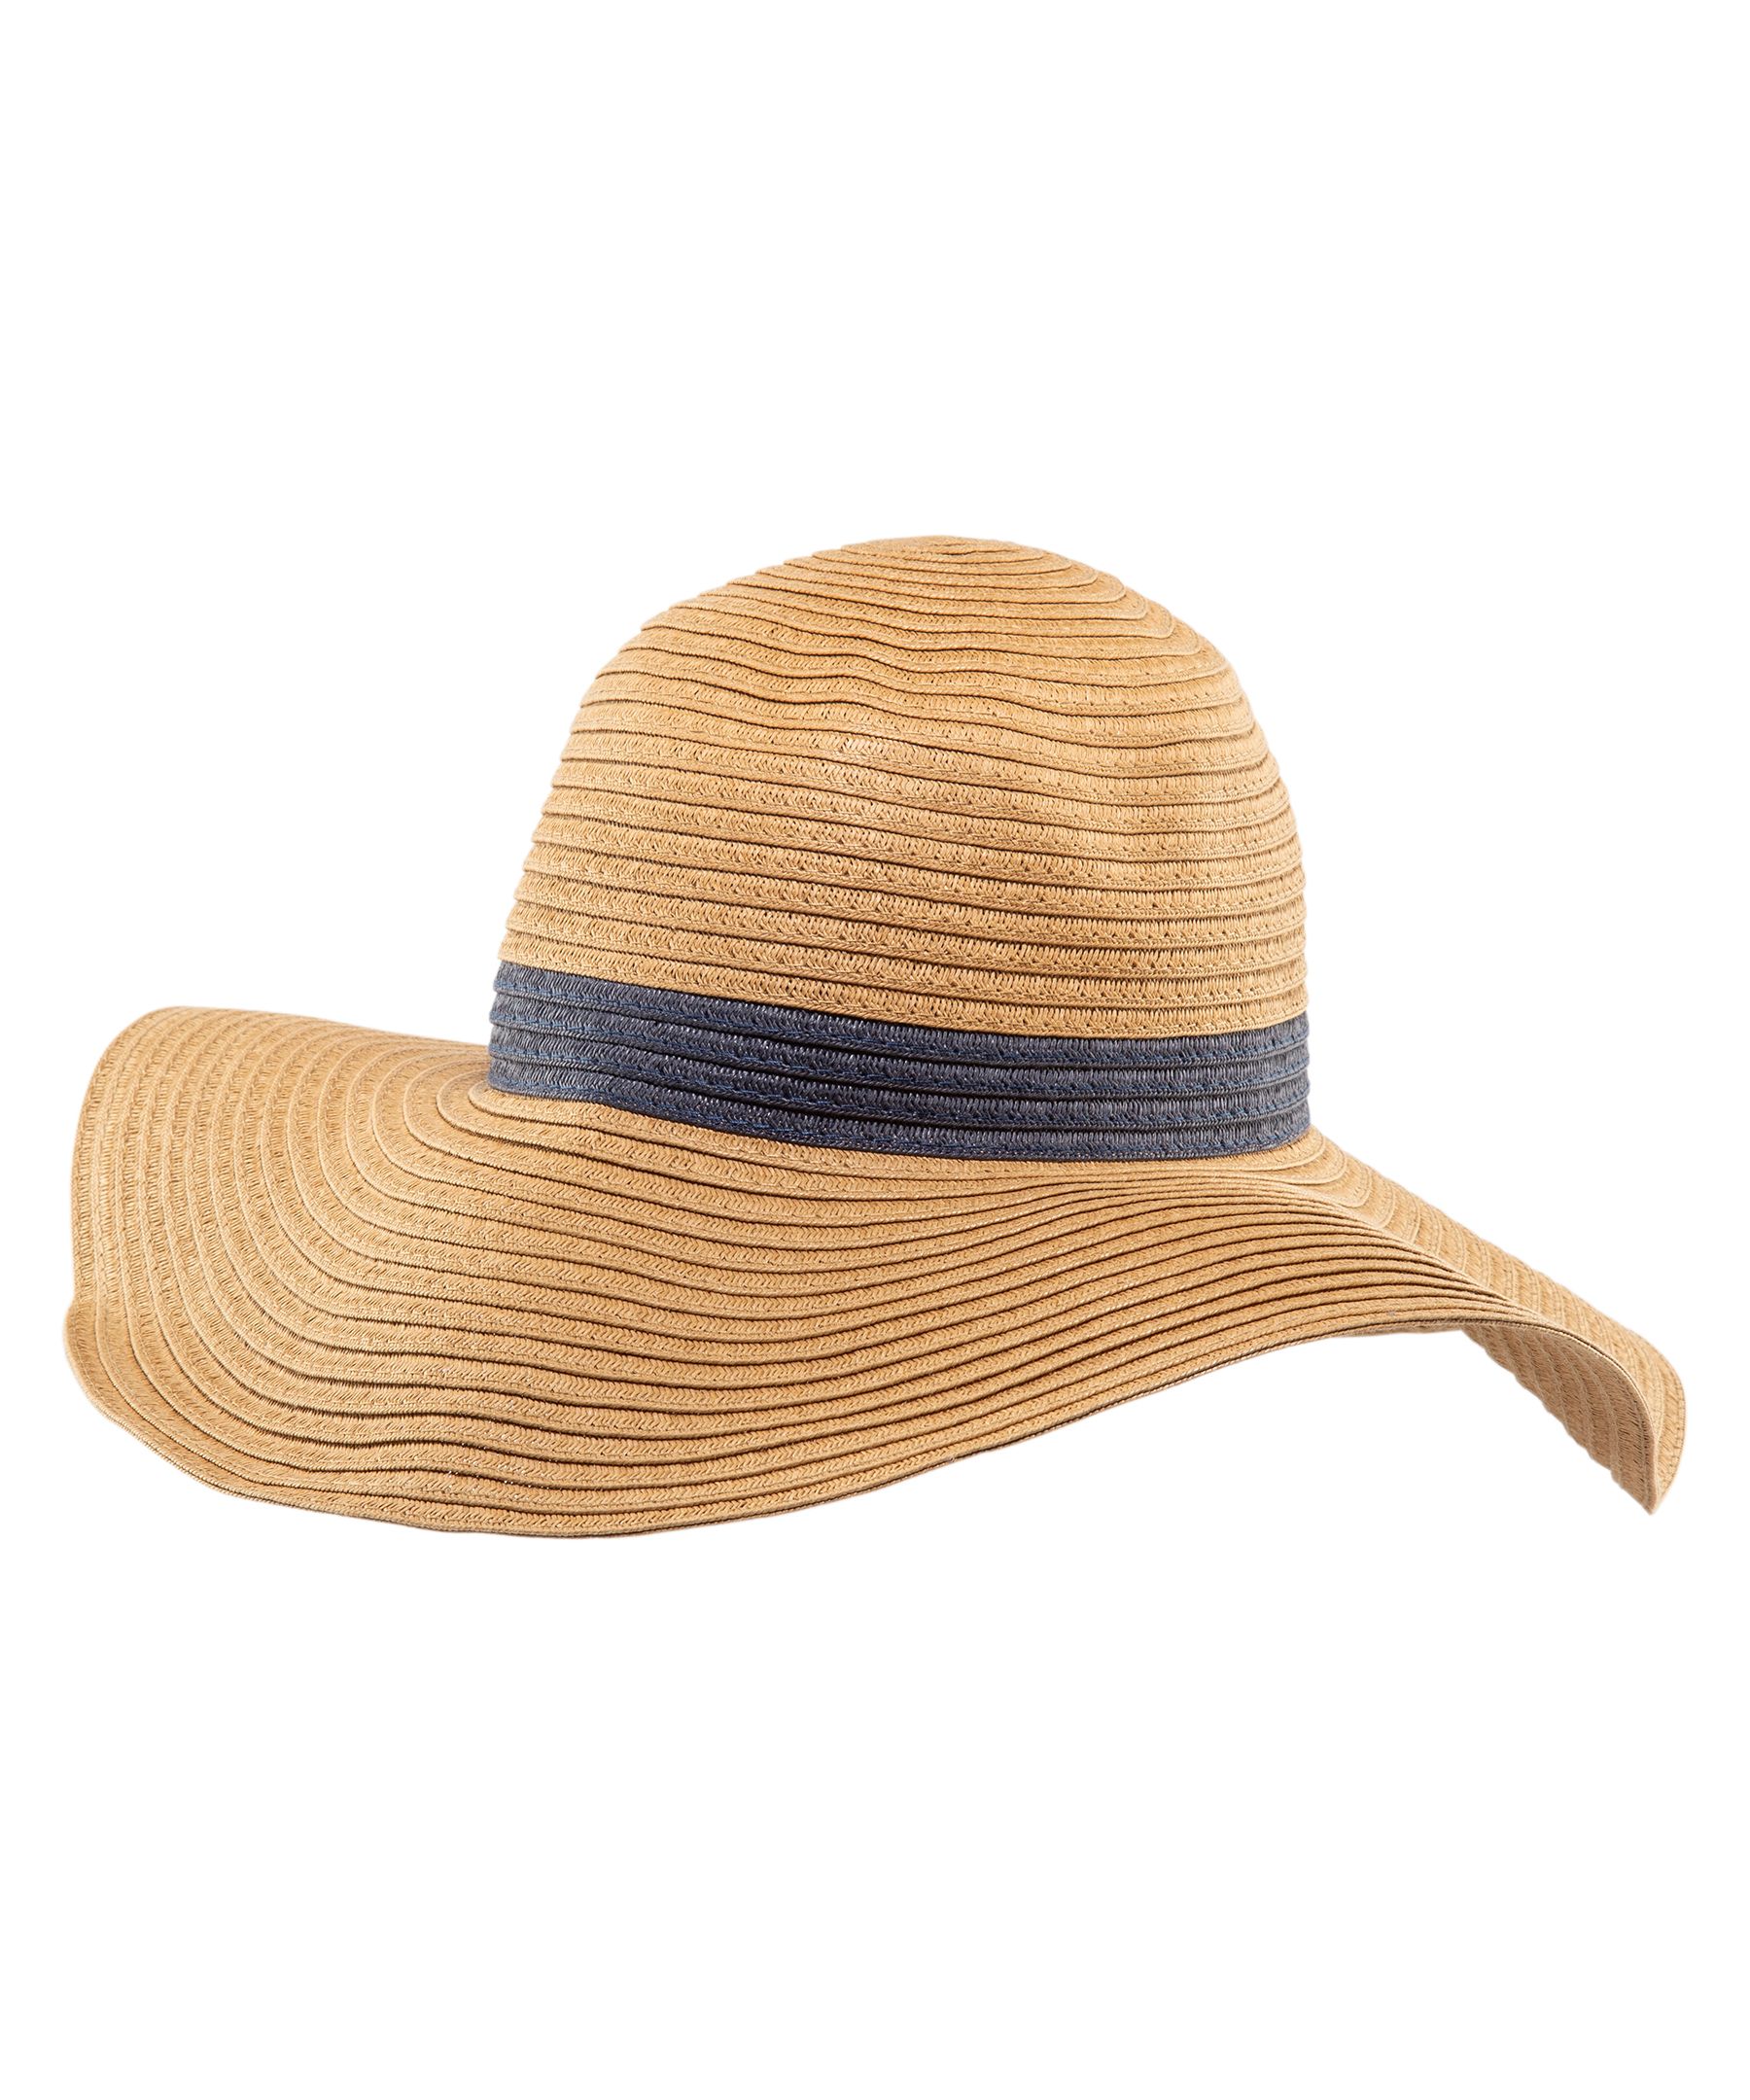 Denver Hayes Women's Floppy Wide Brim Straw Hat